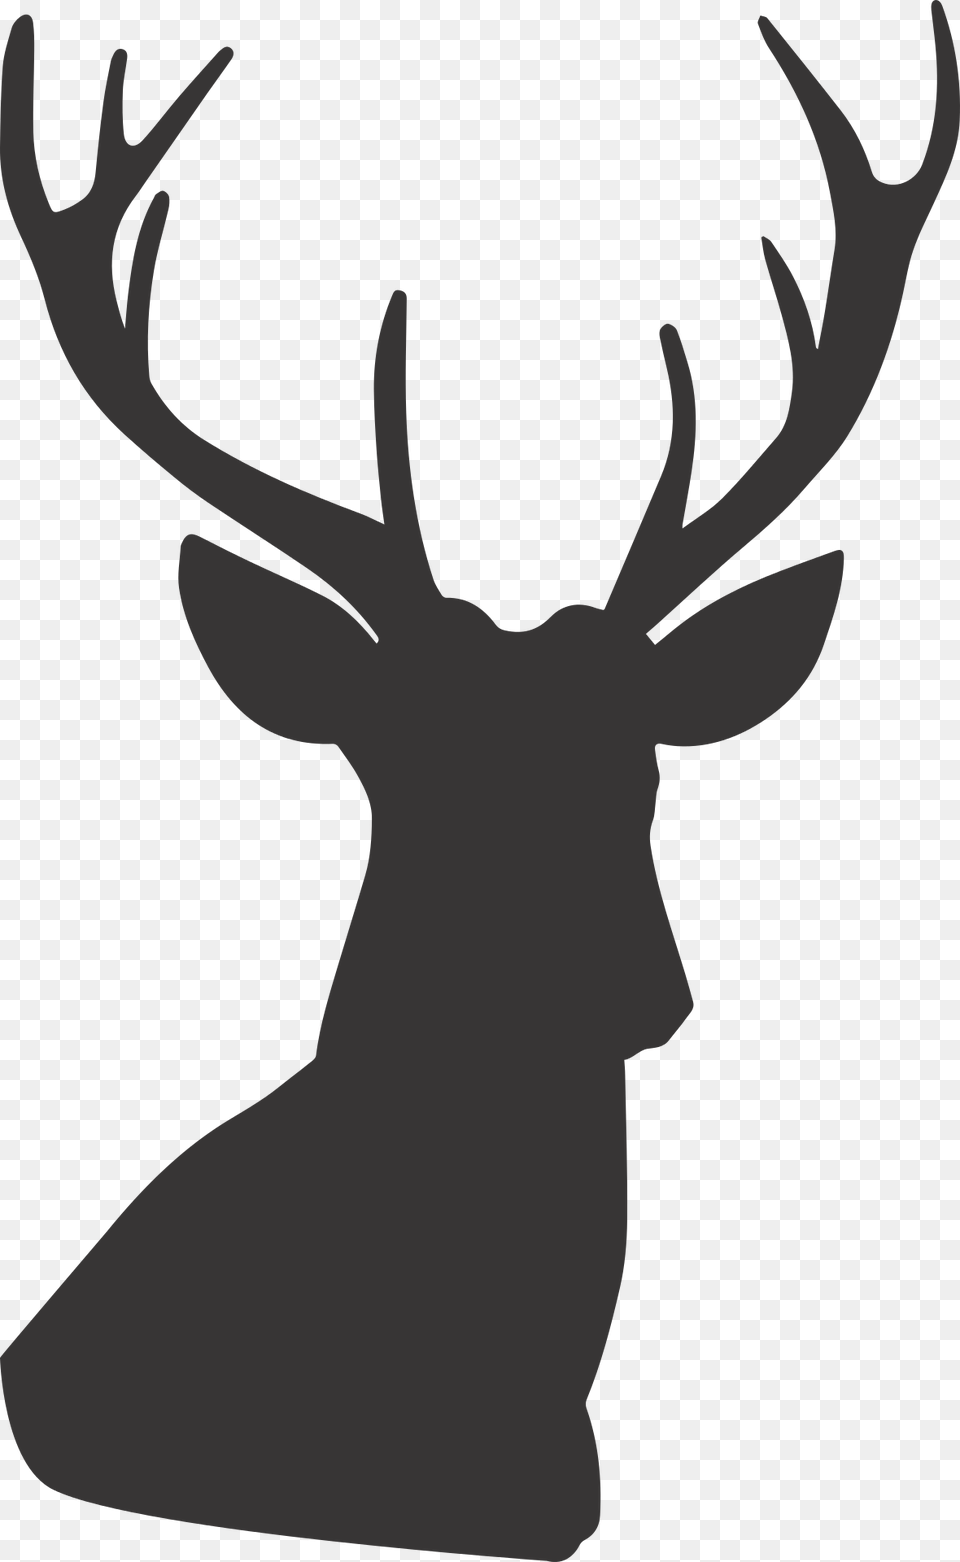 Reindeer Christmas Red Deer Santa Claus Silueta De Venado, Animal, Mammal, Wildlife, Antler Png